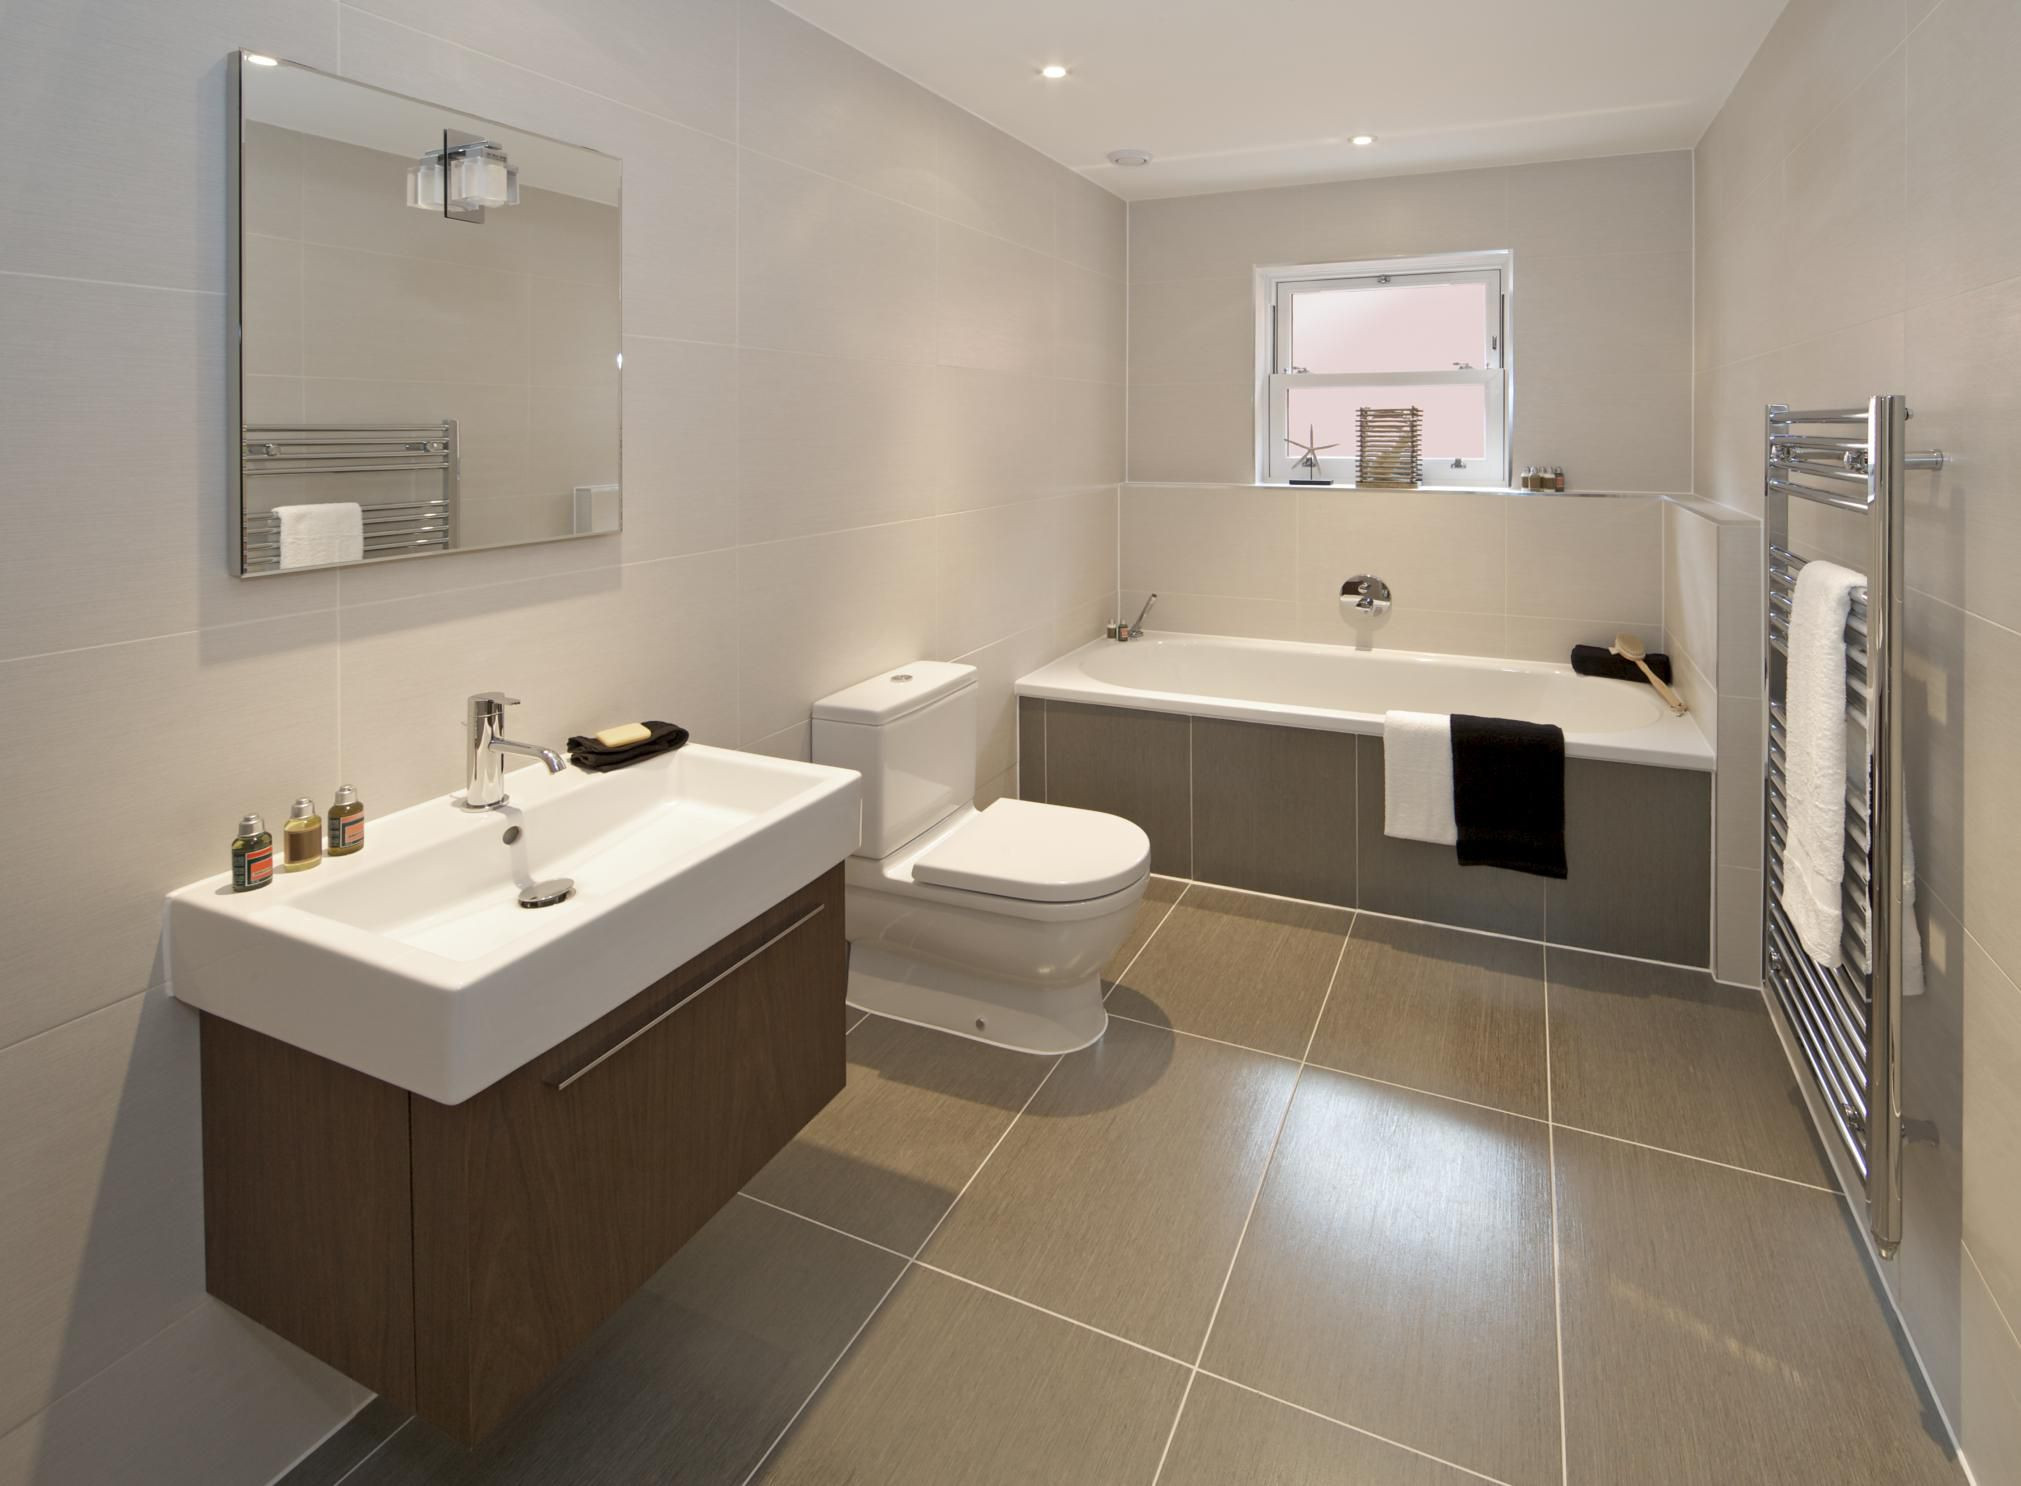 Best Tile For Bathroom Shower
 Advice Best Tile Size For Bathrooms